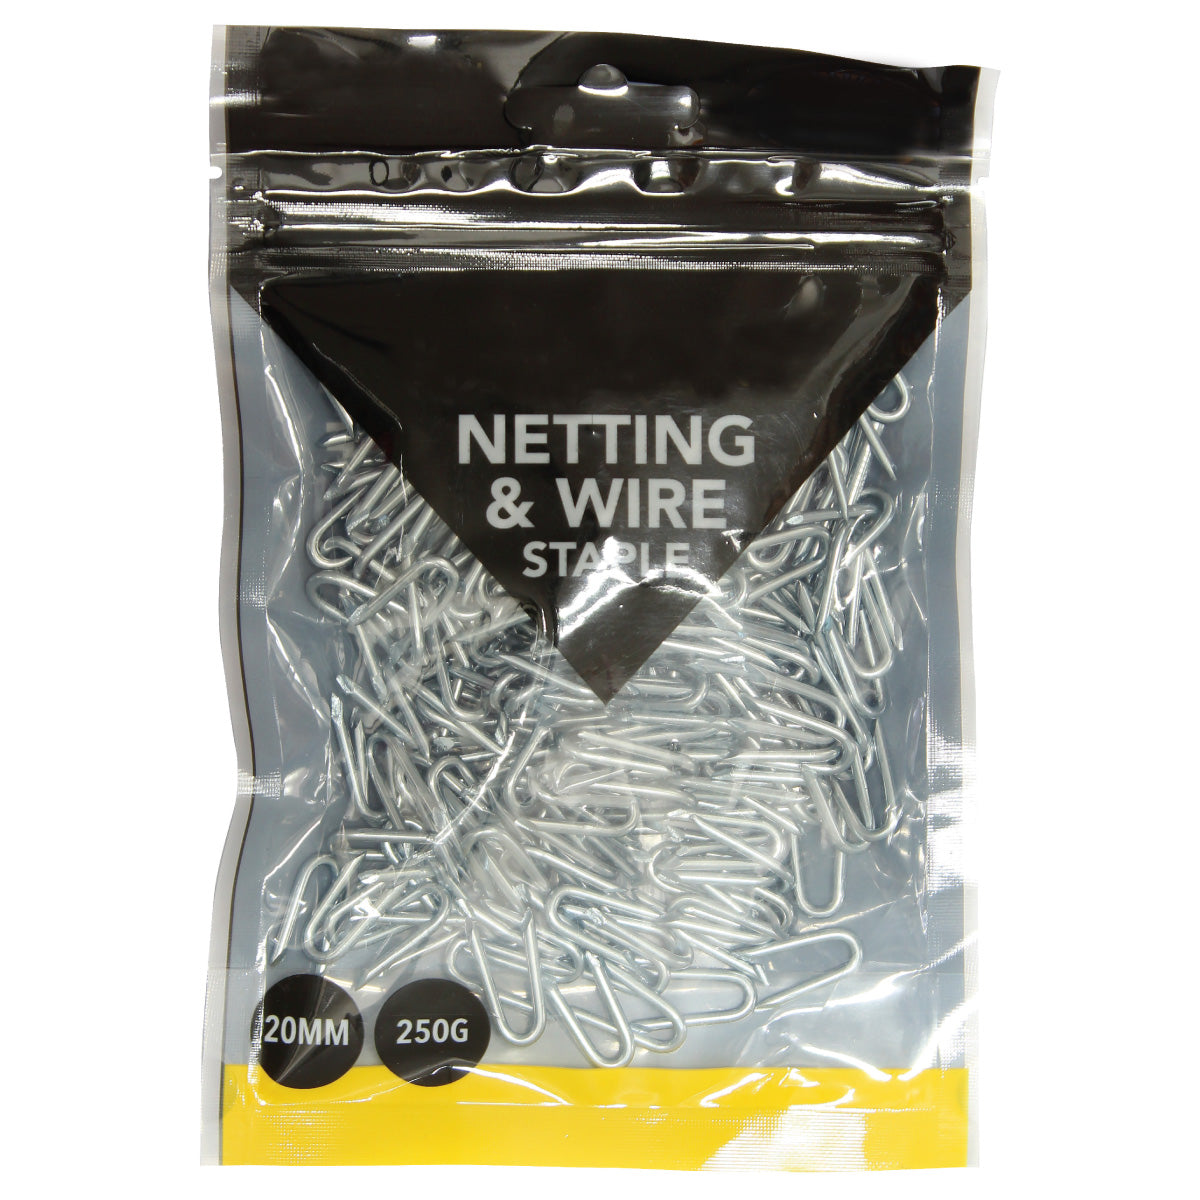 Netting & Wire Staple